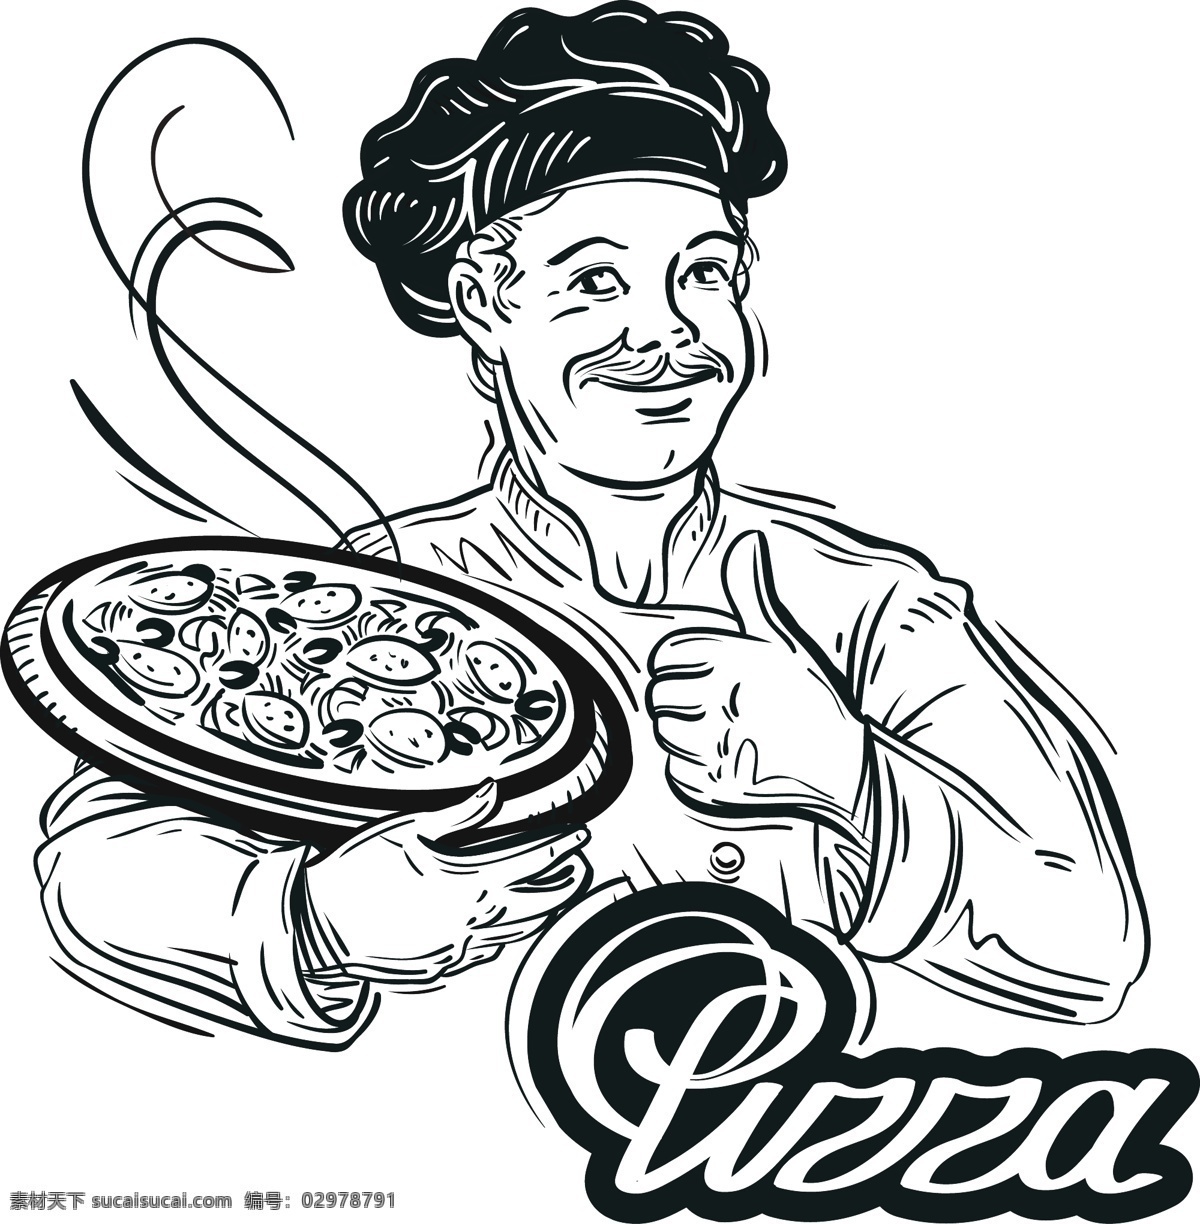 线性 厨师 绘画 竖大拇指 黑白人物物图 披萨 快餐 矢量 高清图片